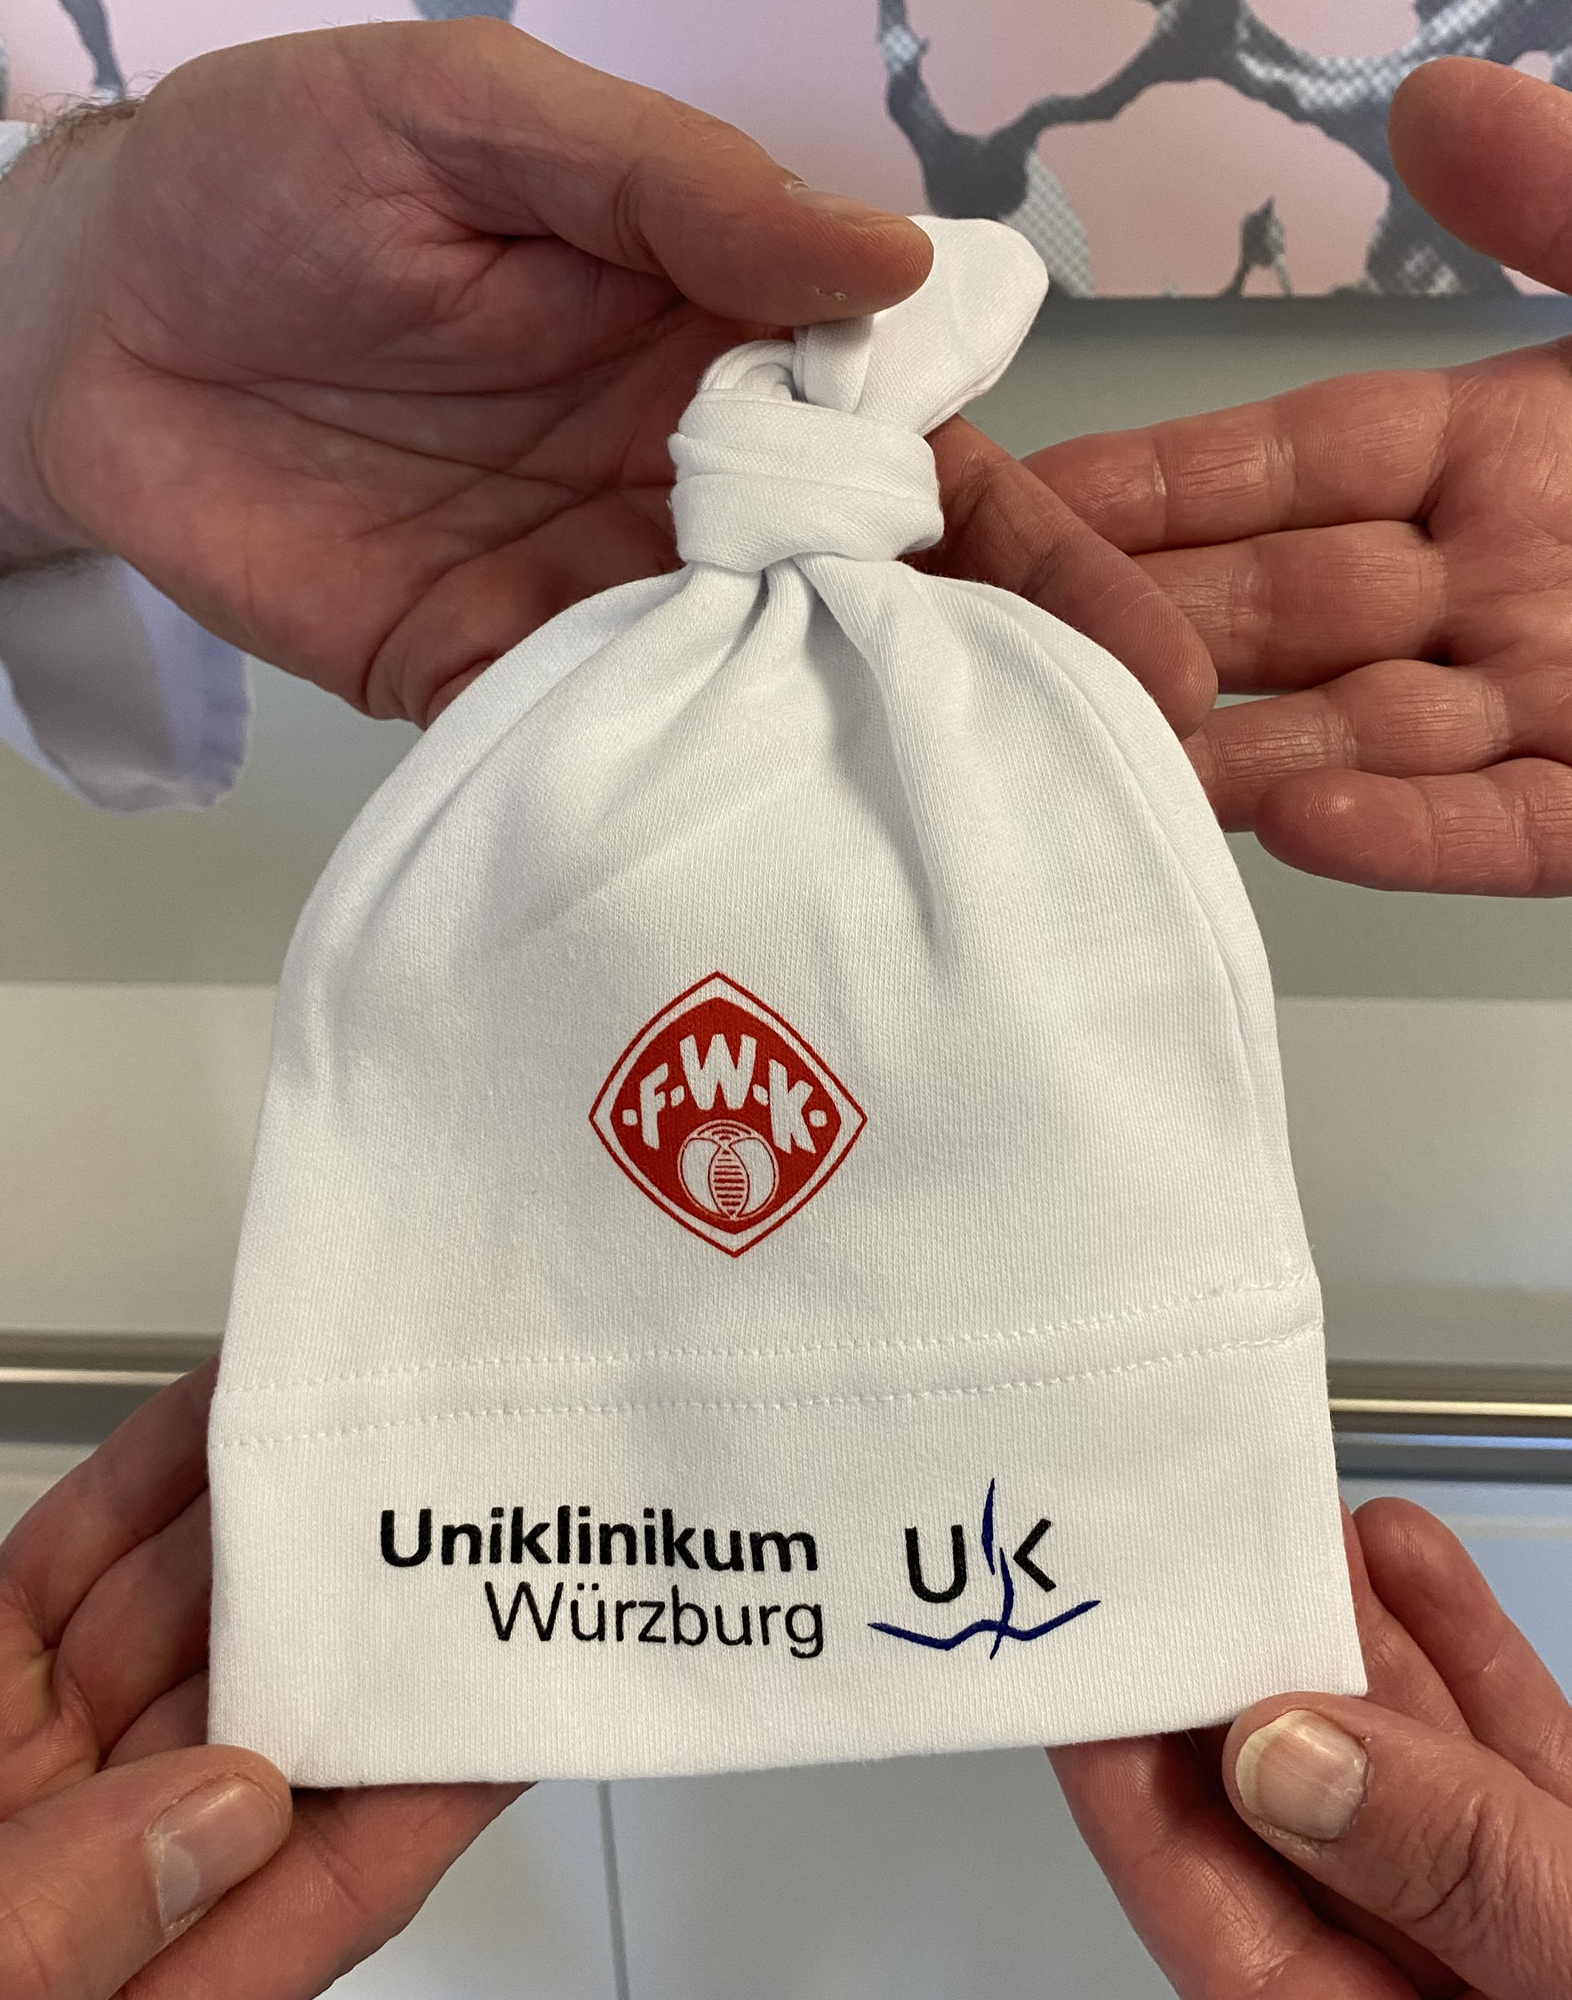 Das gesponserte Neugeborenen-Mützchen zeigt die Logos des FC Würzburger Kickers und des Uniklinikums Würzburg